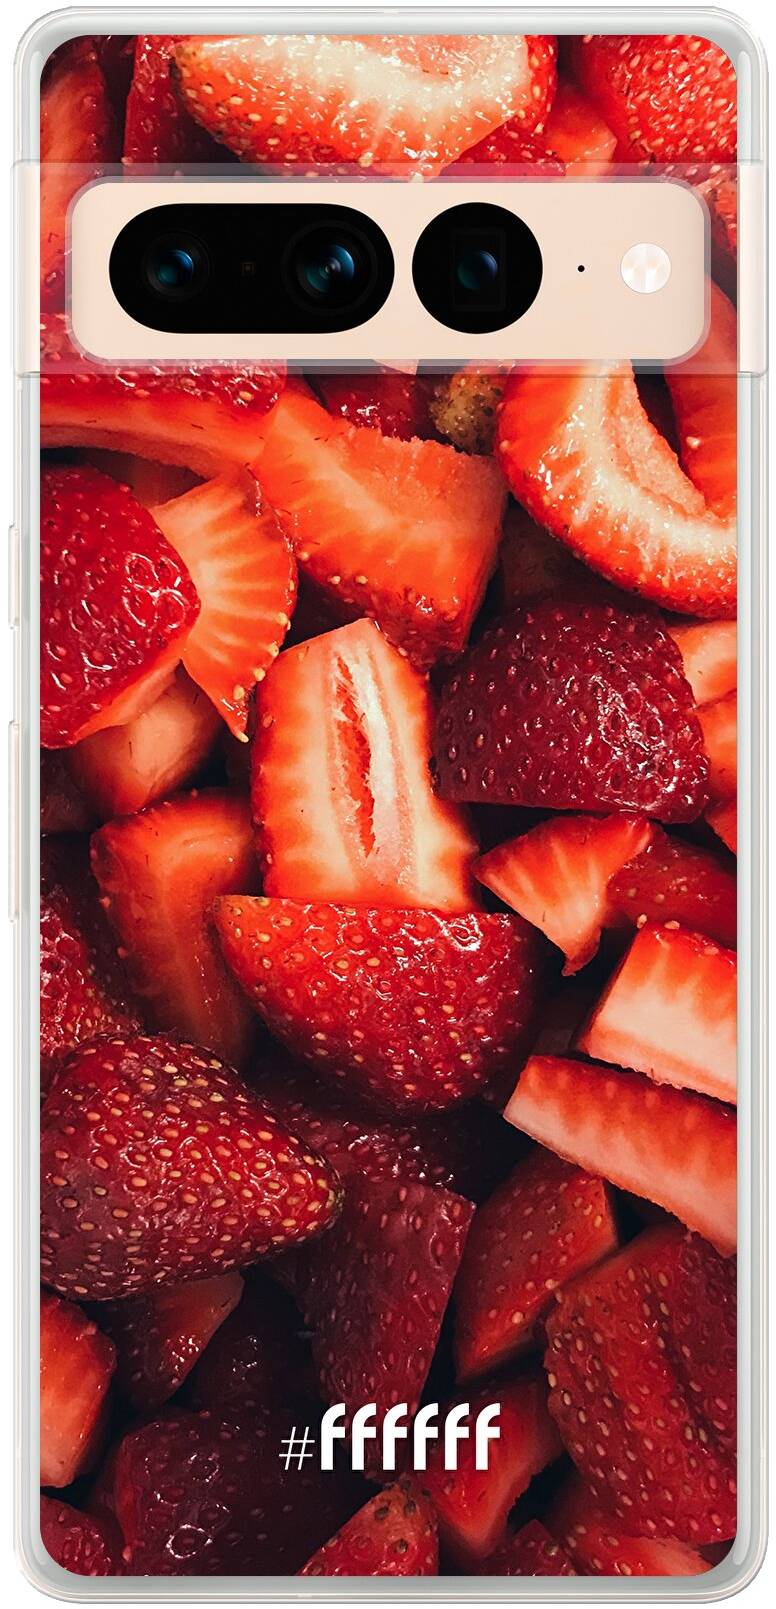 Strawberry Fields Pixel 7 Pro